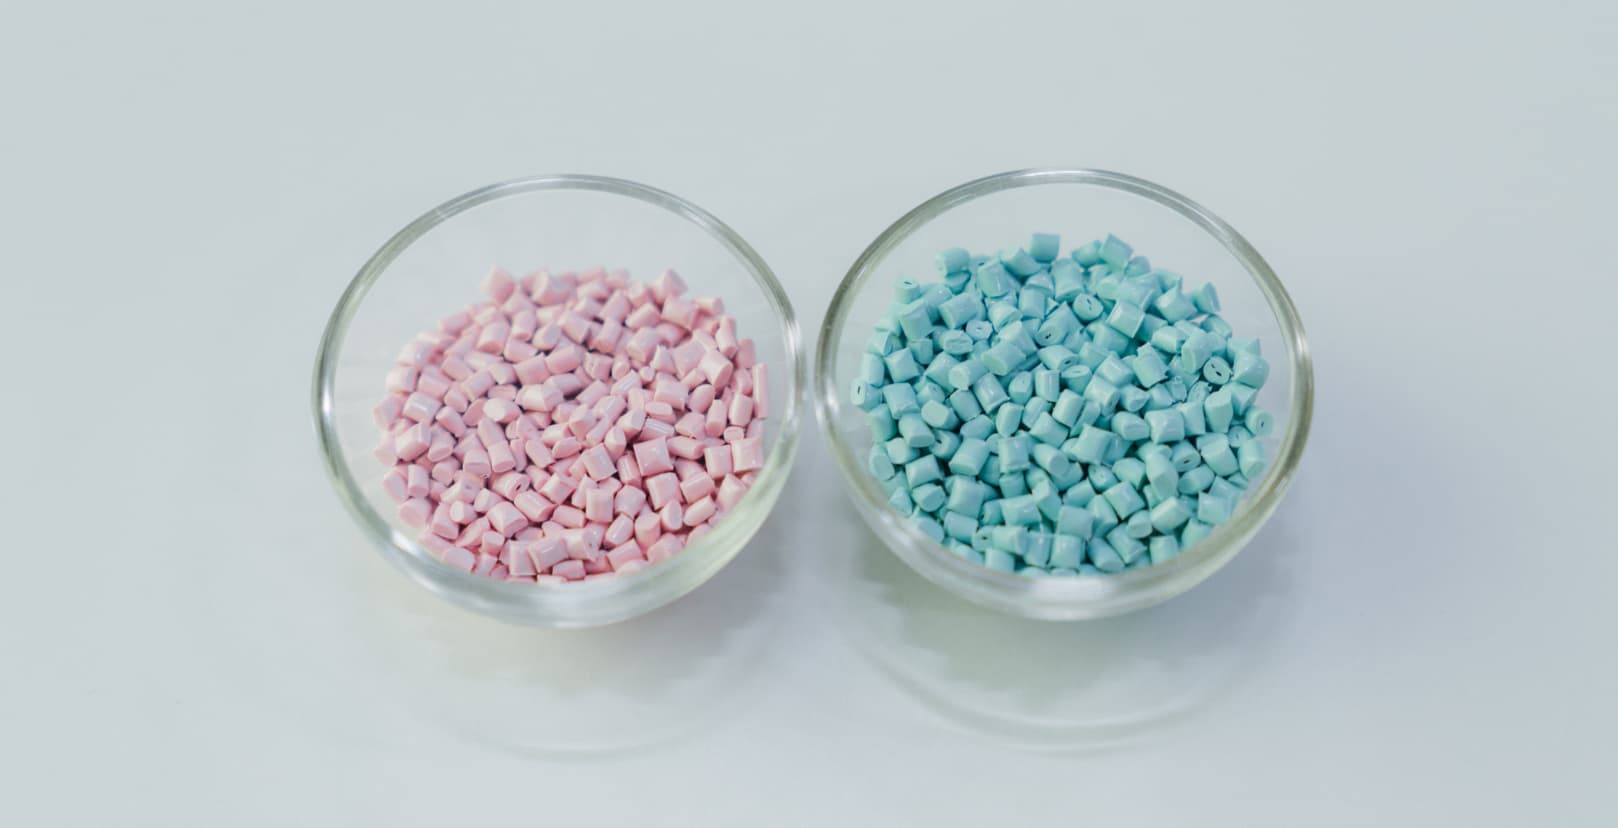 再生プラスチックを使用したピンクとブルーの素材の写真。